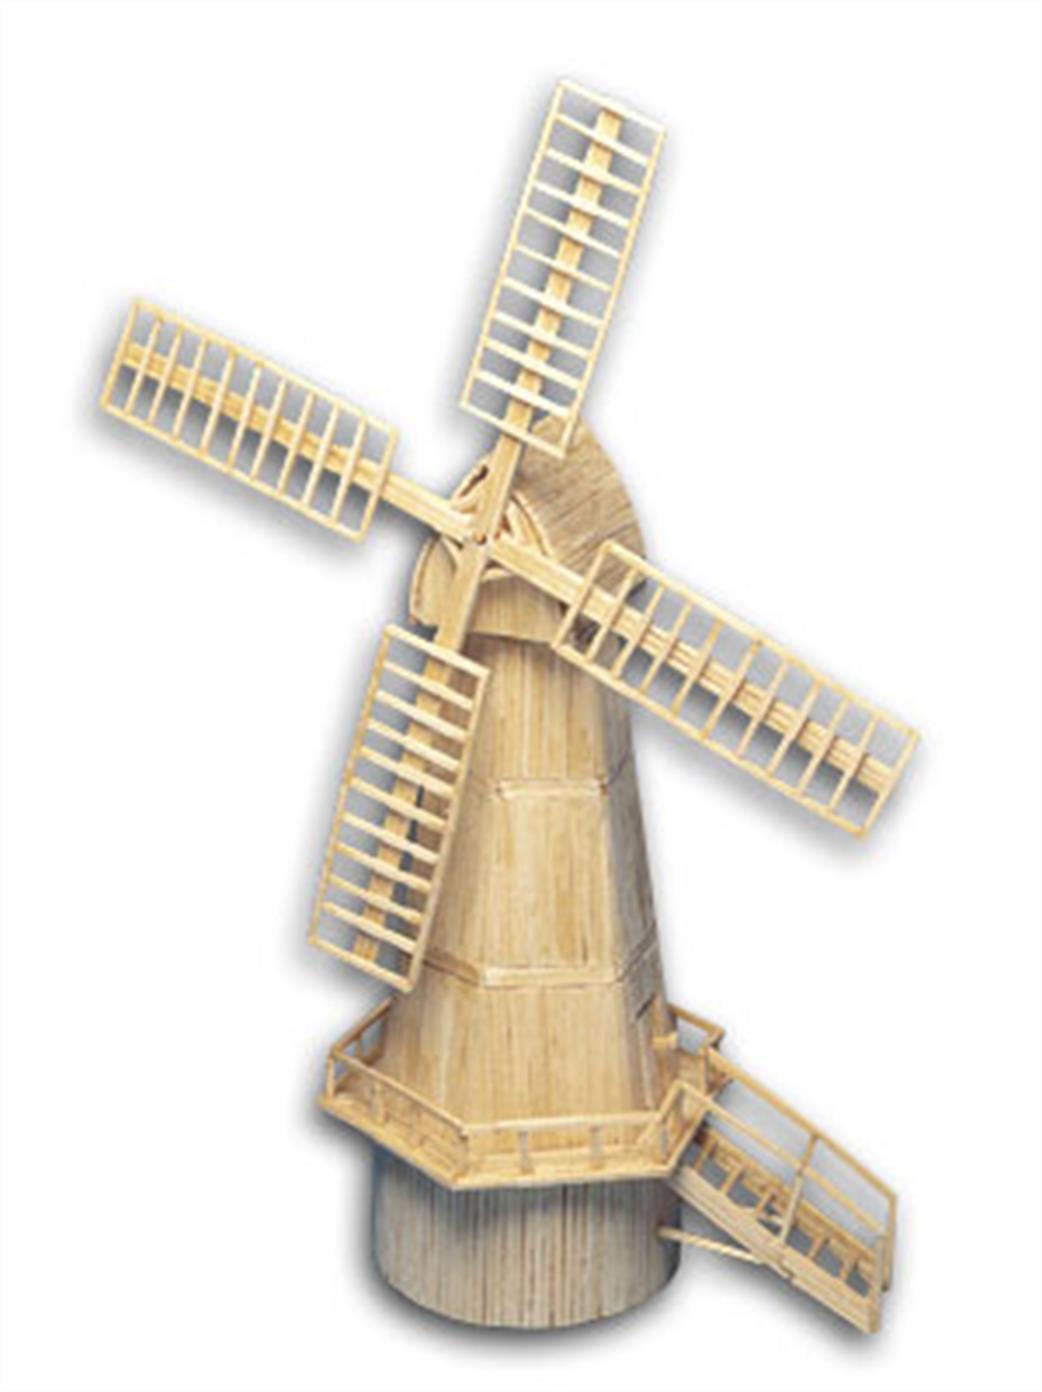 Matchcraft  11493 Dutch Windmill Matchstick Kit